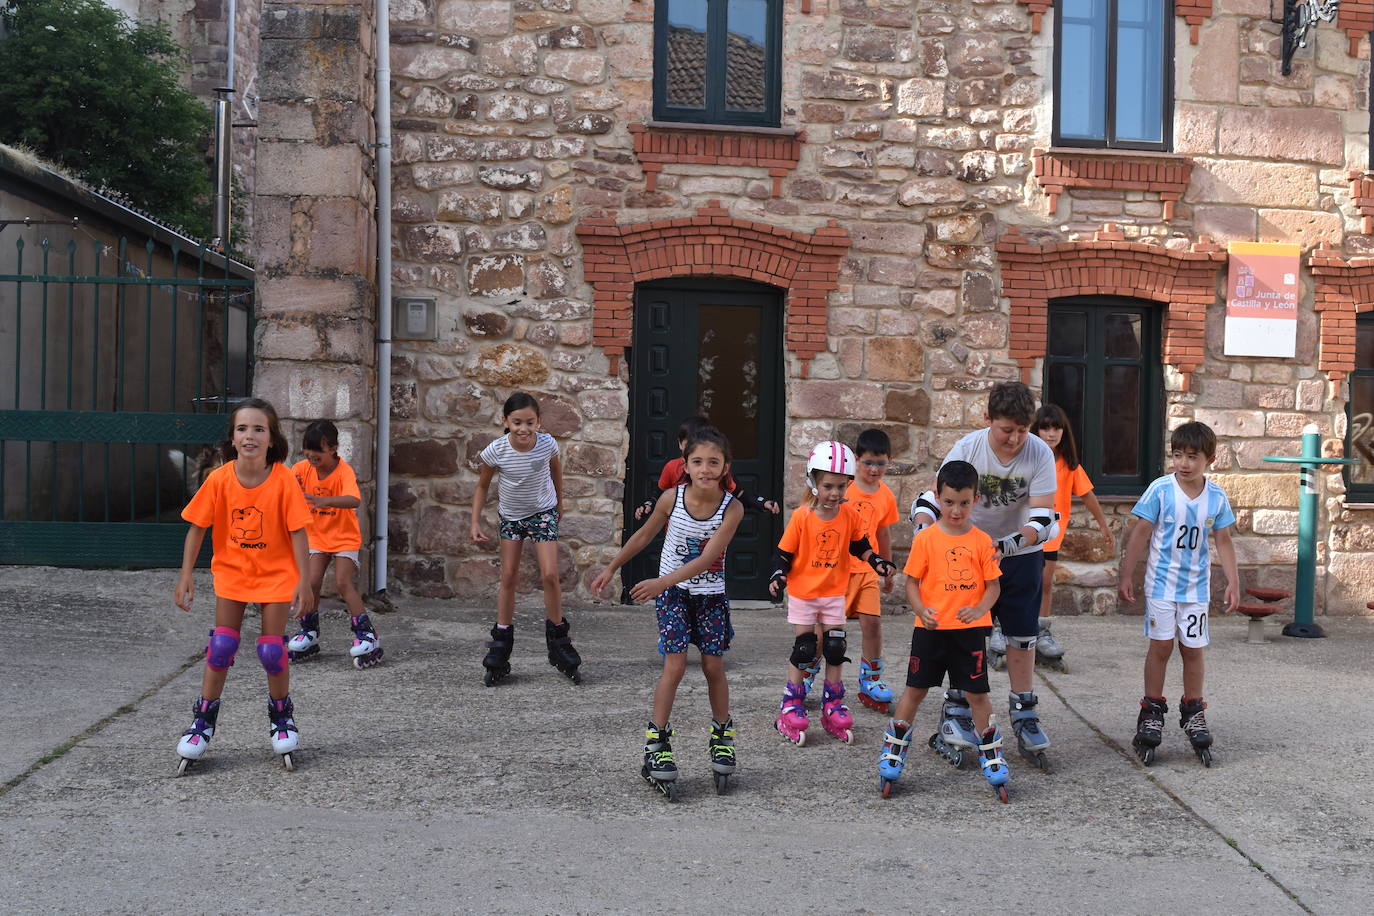 Imagen principal - En el mes de julio ha habido cursos de patinaje para los niños. Abajo, inicio de la Senda de la Pedrosa, una de las que recorren el municipio. A la derecha, curso de cocina desarrollado en julio en Brañosera. 